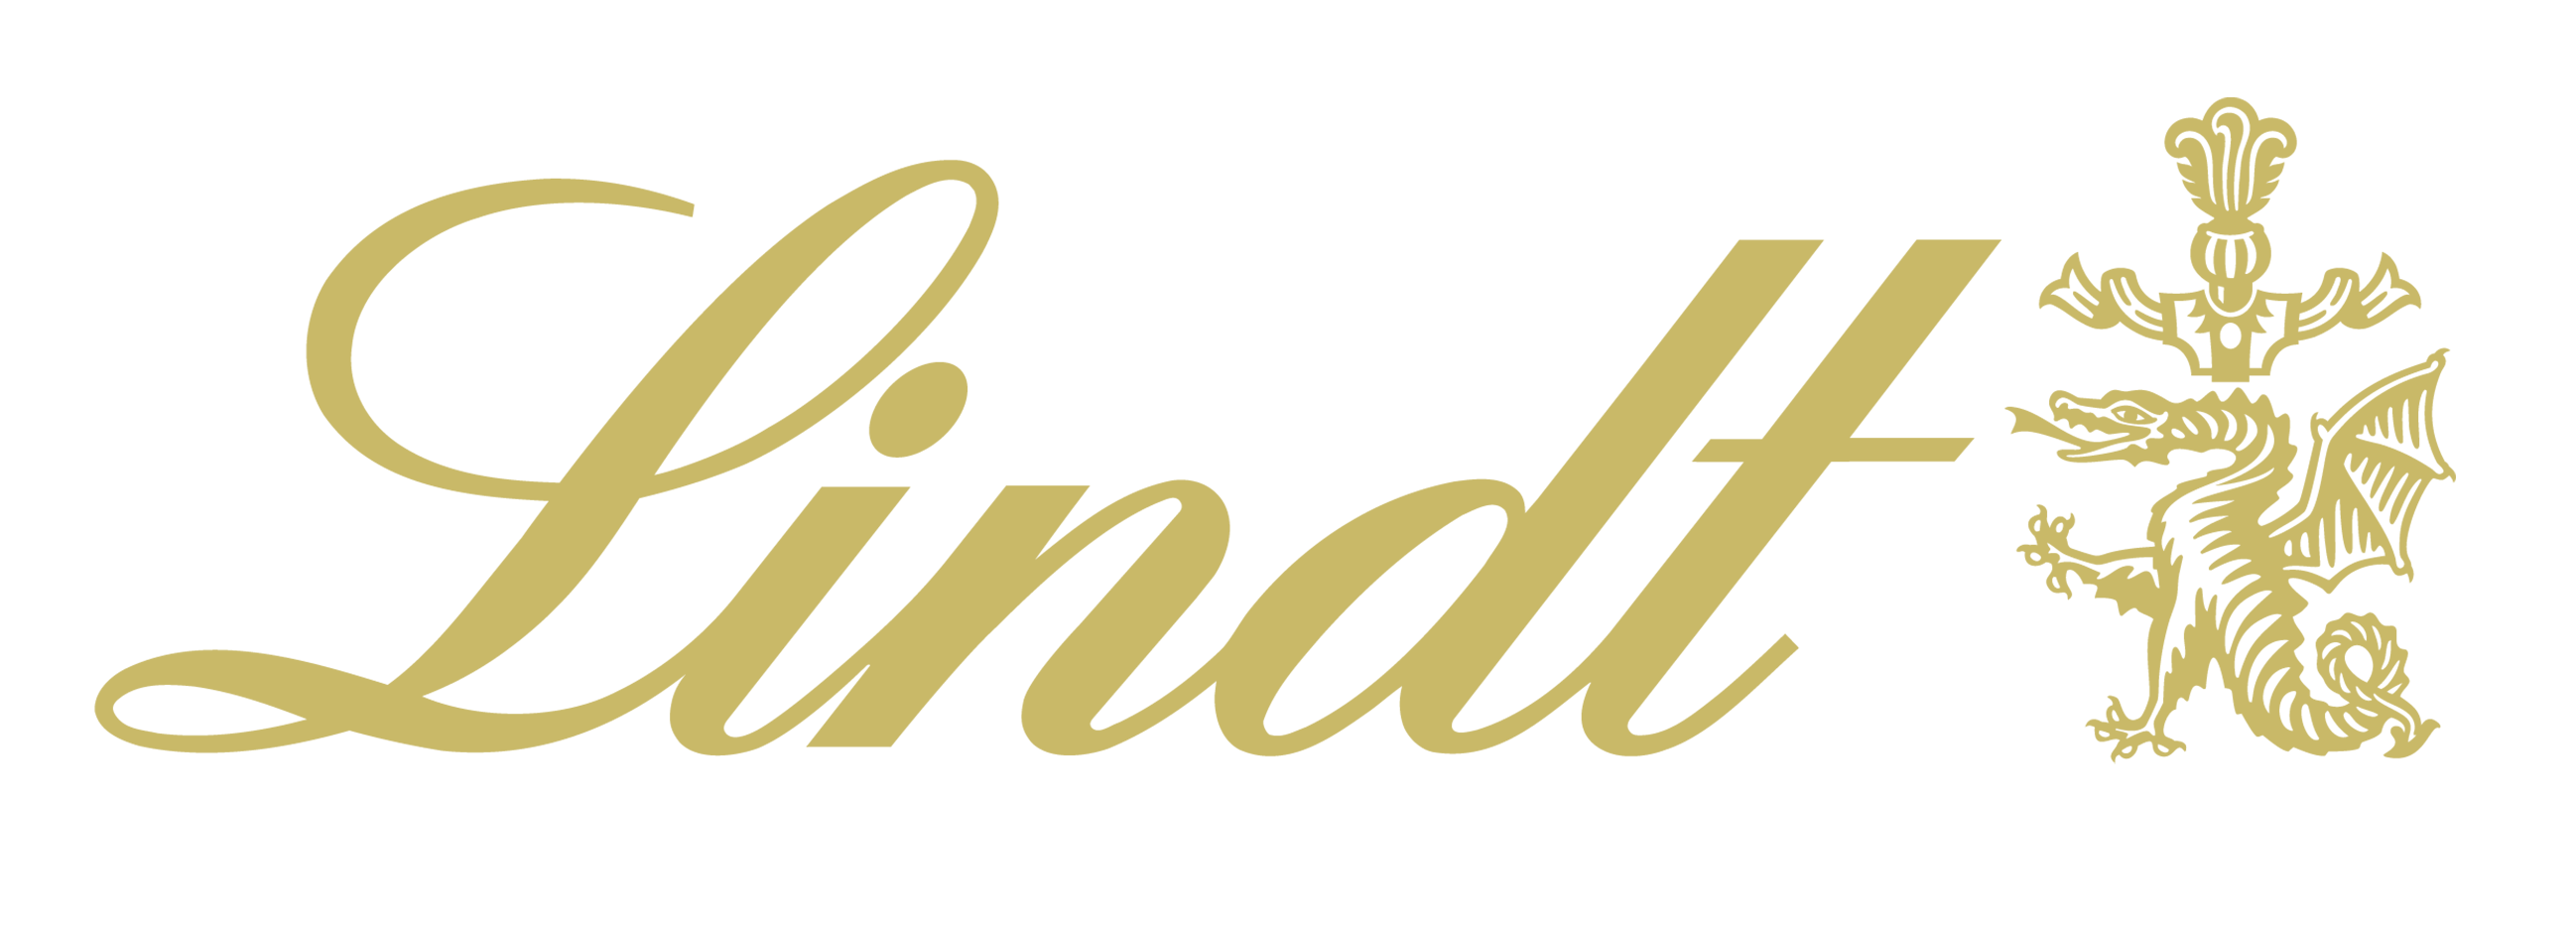 LINDT logo